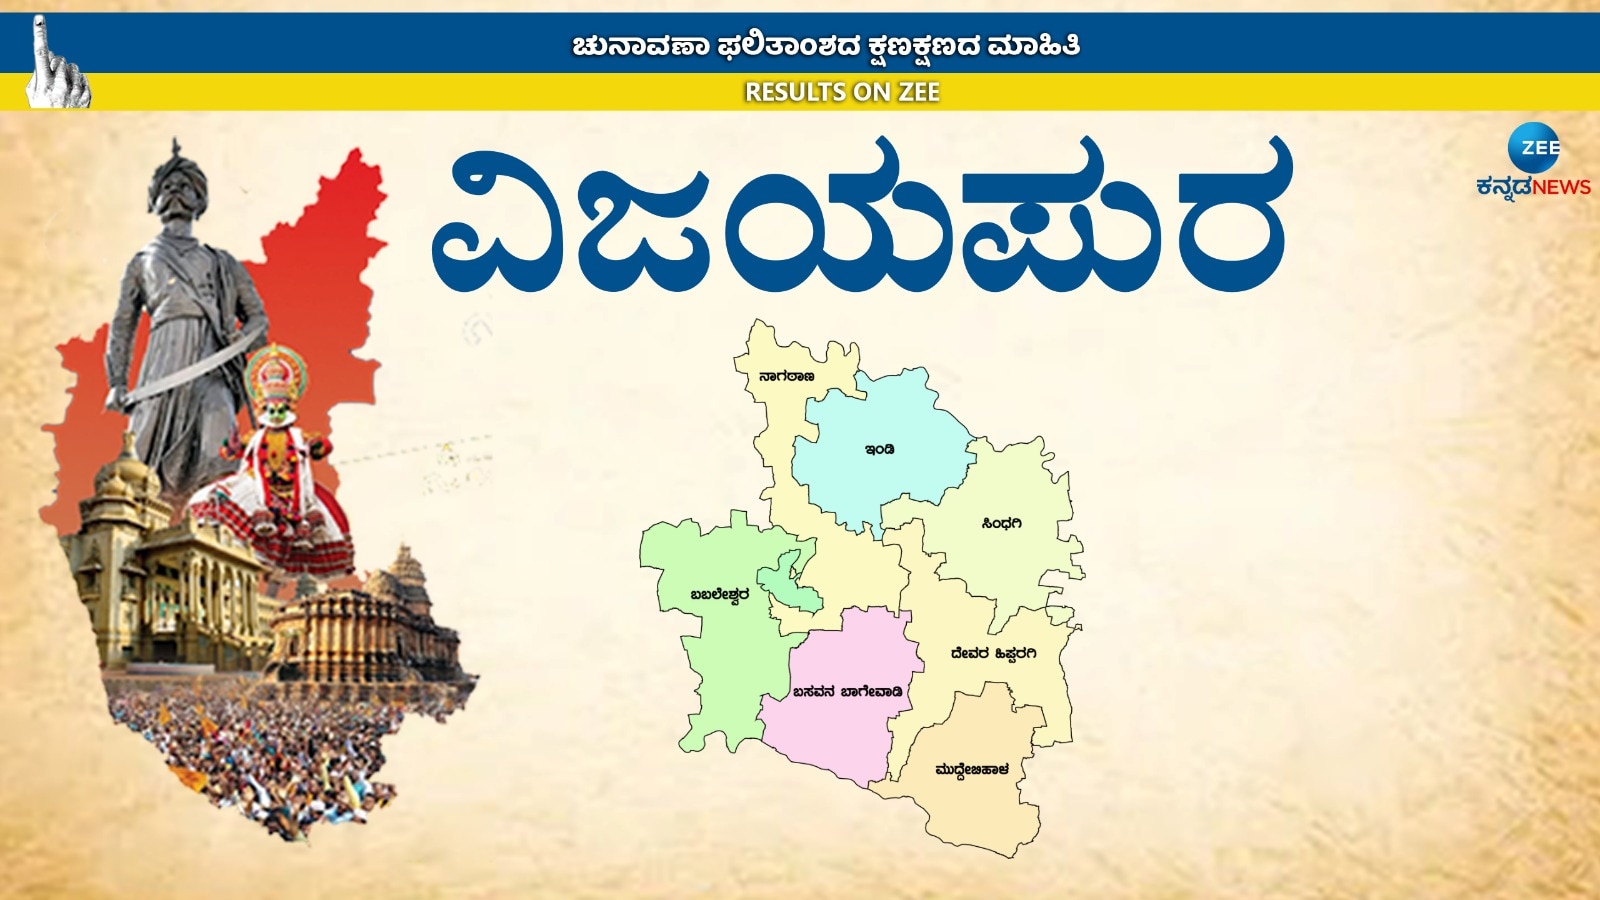 Karnataka Elections Results 2023: ಕಾಂಗ್ರೆಸ್-ಬಿಜೆಪಿ ಪಾರಮ್ಯದ ವಿಜಯಪುರ ಜಿಲ್ಲೆಯಲ್ಲಿ ಗೌಡ-ಪಾಟೀಲರದ್ದೇ ವರ್ಚ್ಚಸ್ಸು!